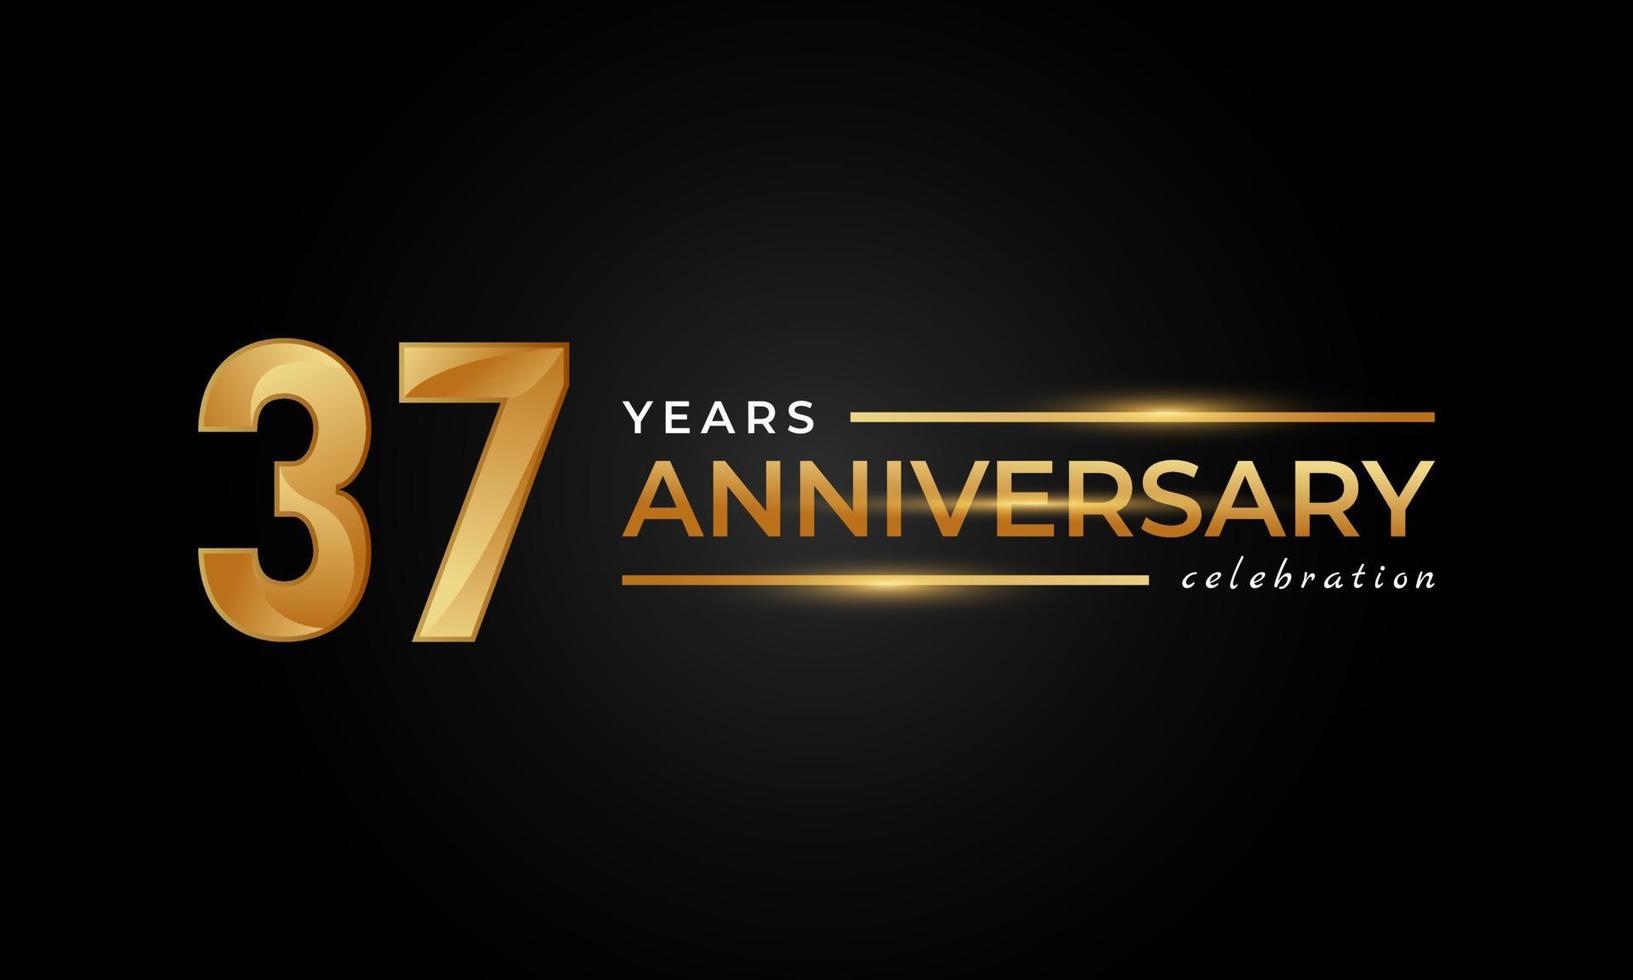 37-jarig jubileumfeest met glanzende gouden en zilveren kleur voor feestgebeurtenis, bruiloft, wenskaart en uitnodiging geïsoleerd op zwarte achtergrond vector